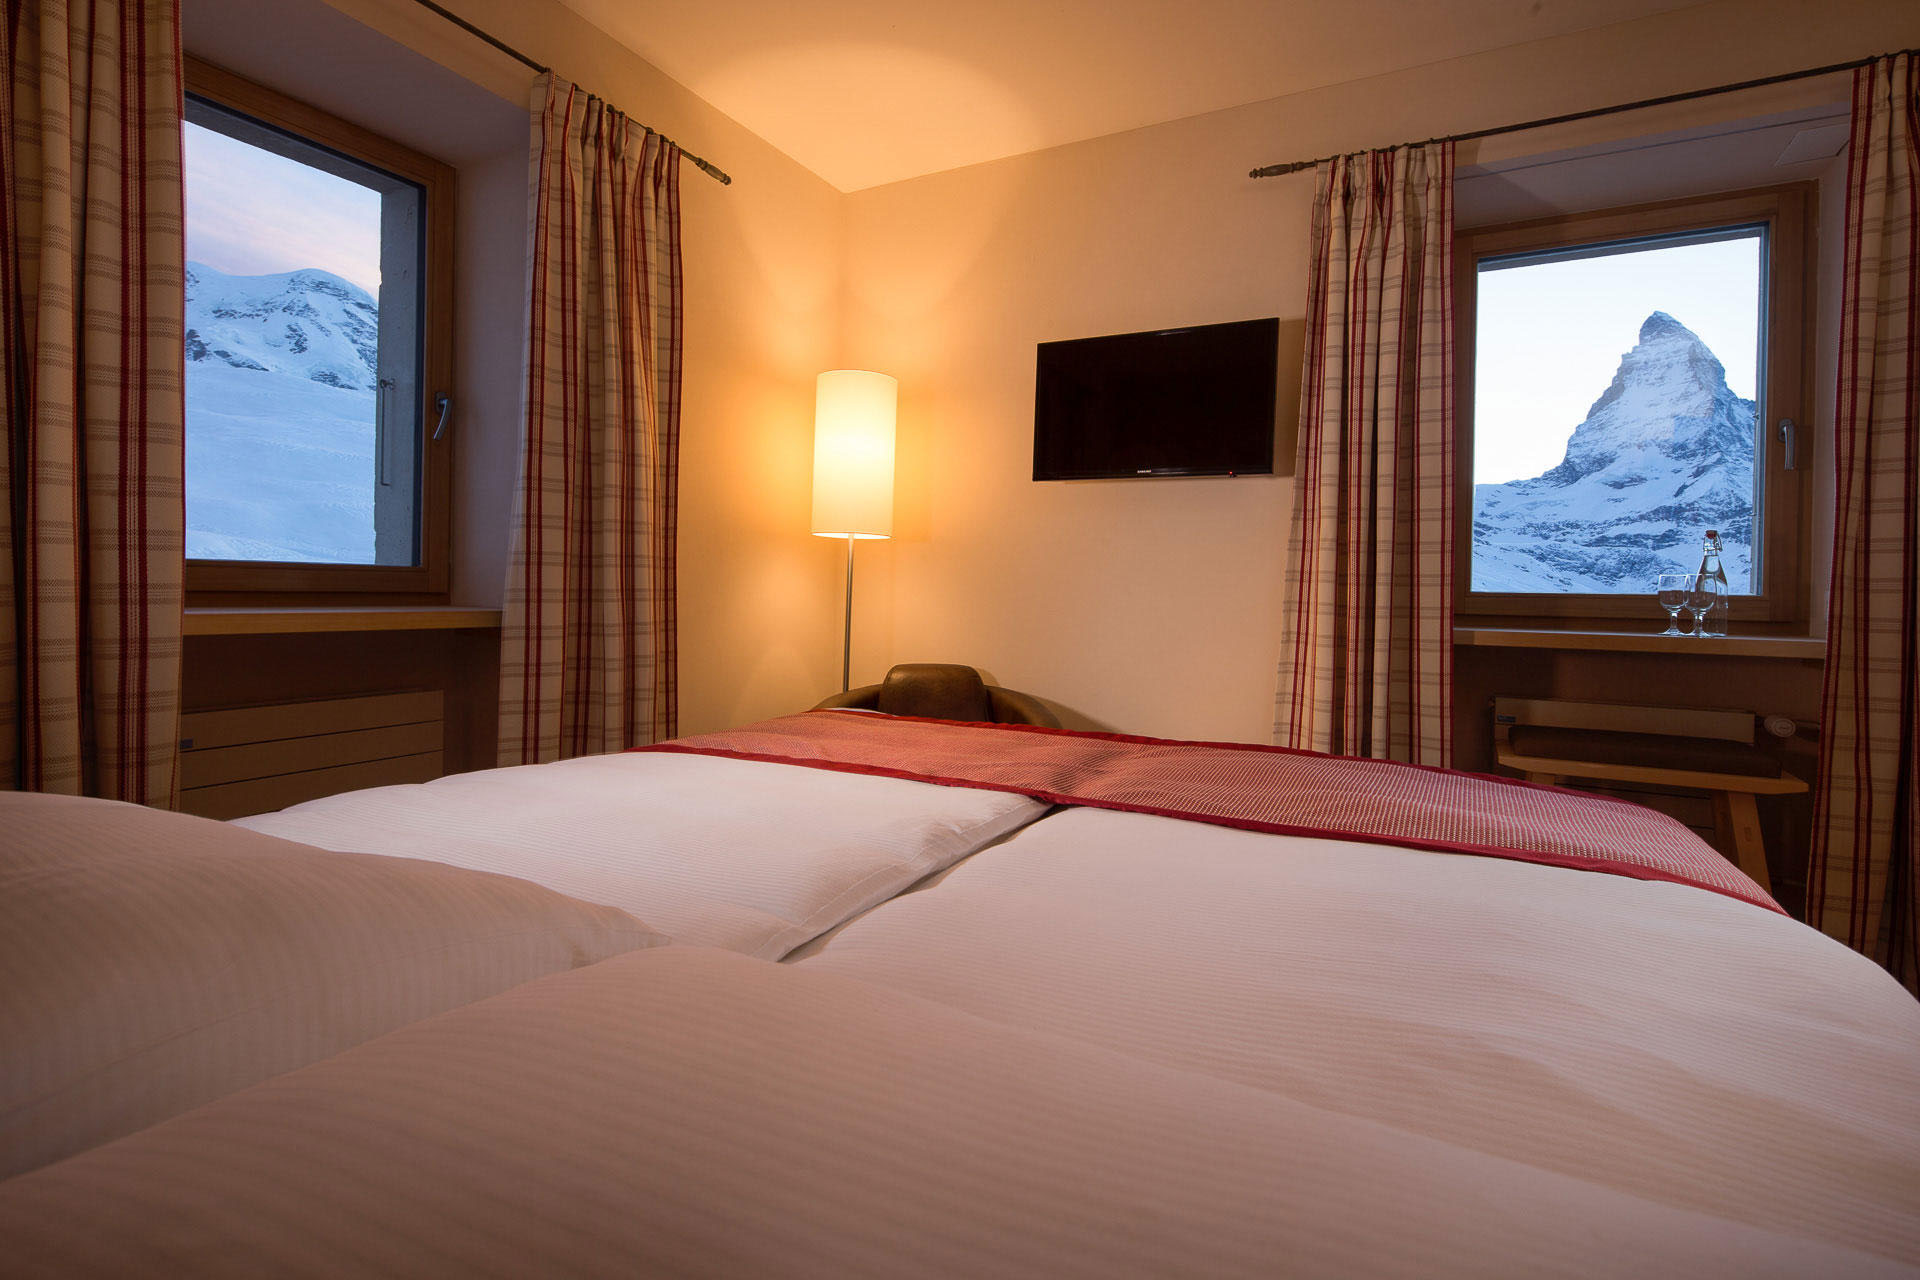 Double Room View - Riffelhaus Hotel - The Matterhorn